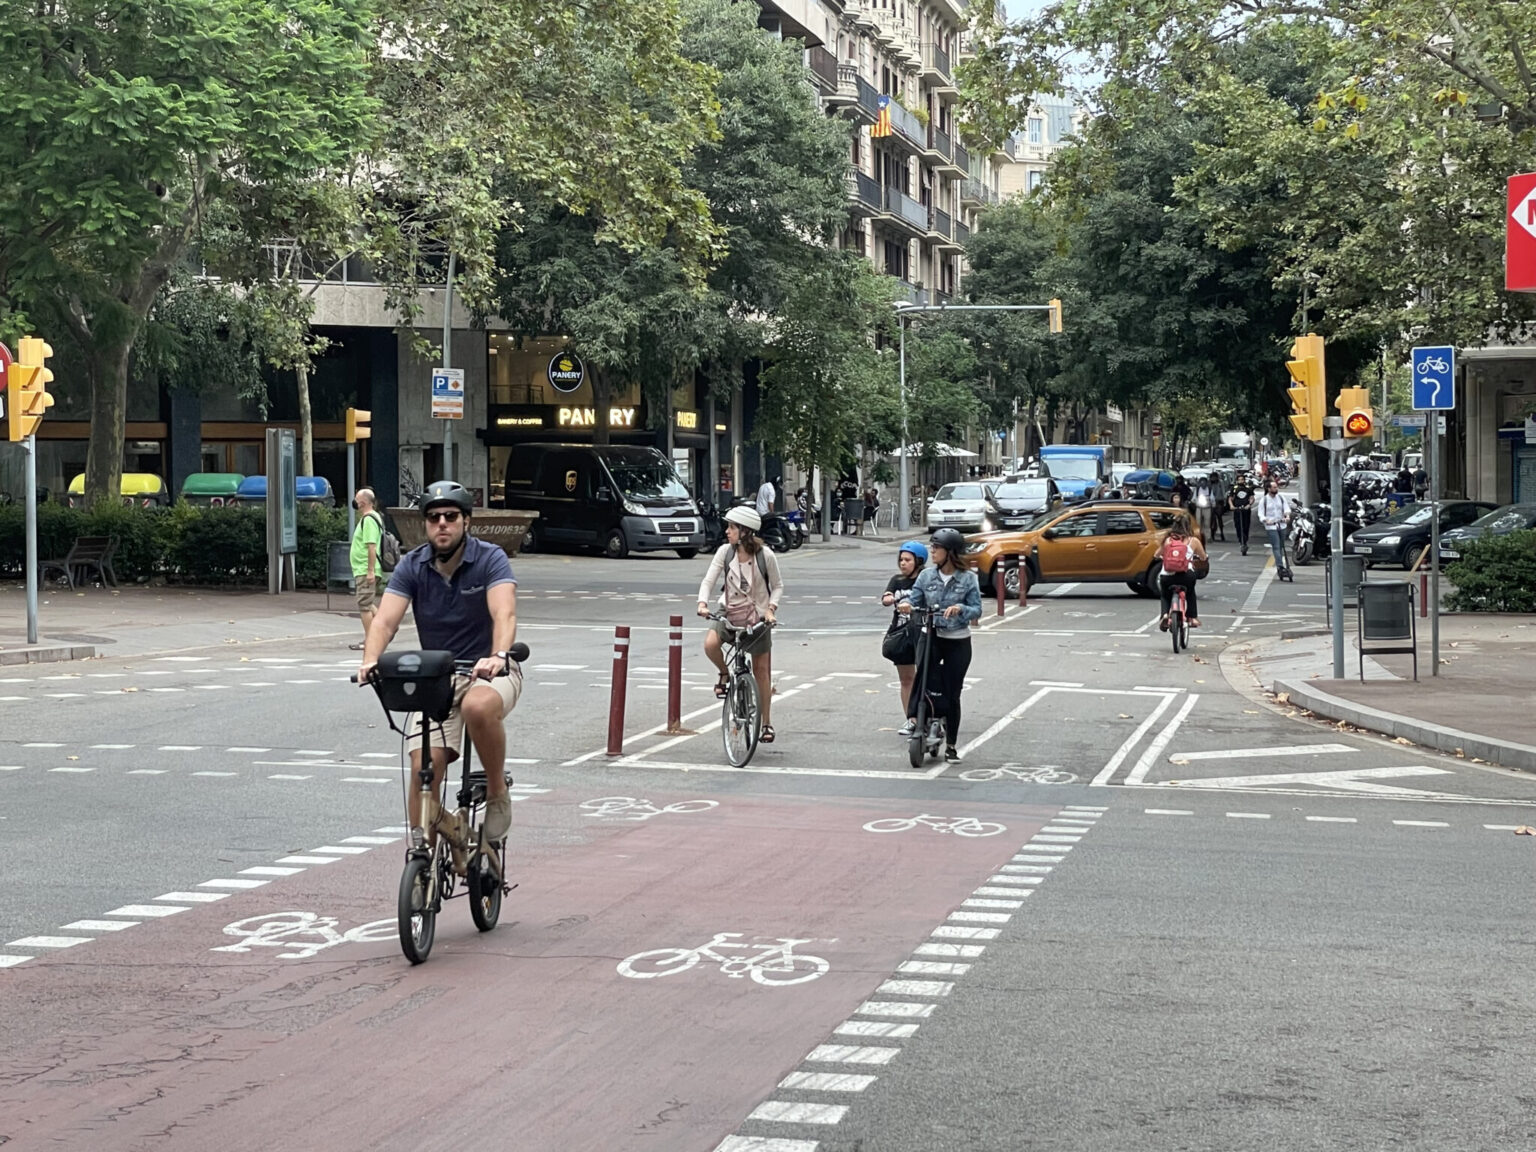 Evropská města přerozdělují prostor v ulicích tak, aby si každý mohl zvolit vlastní bezpečný způsob dopravy. Barcelona vytvořila síť cyklostezek, která se díky velké oblibě obyvatel neustále rozrůstá Zdroj: Martin Šnobr